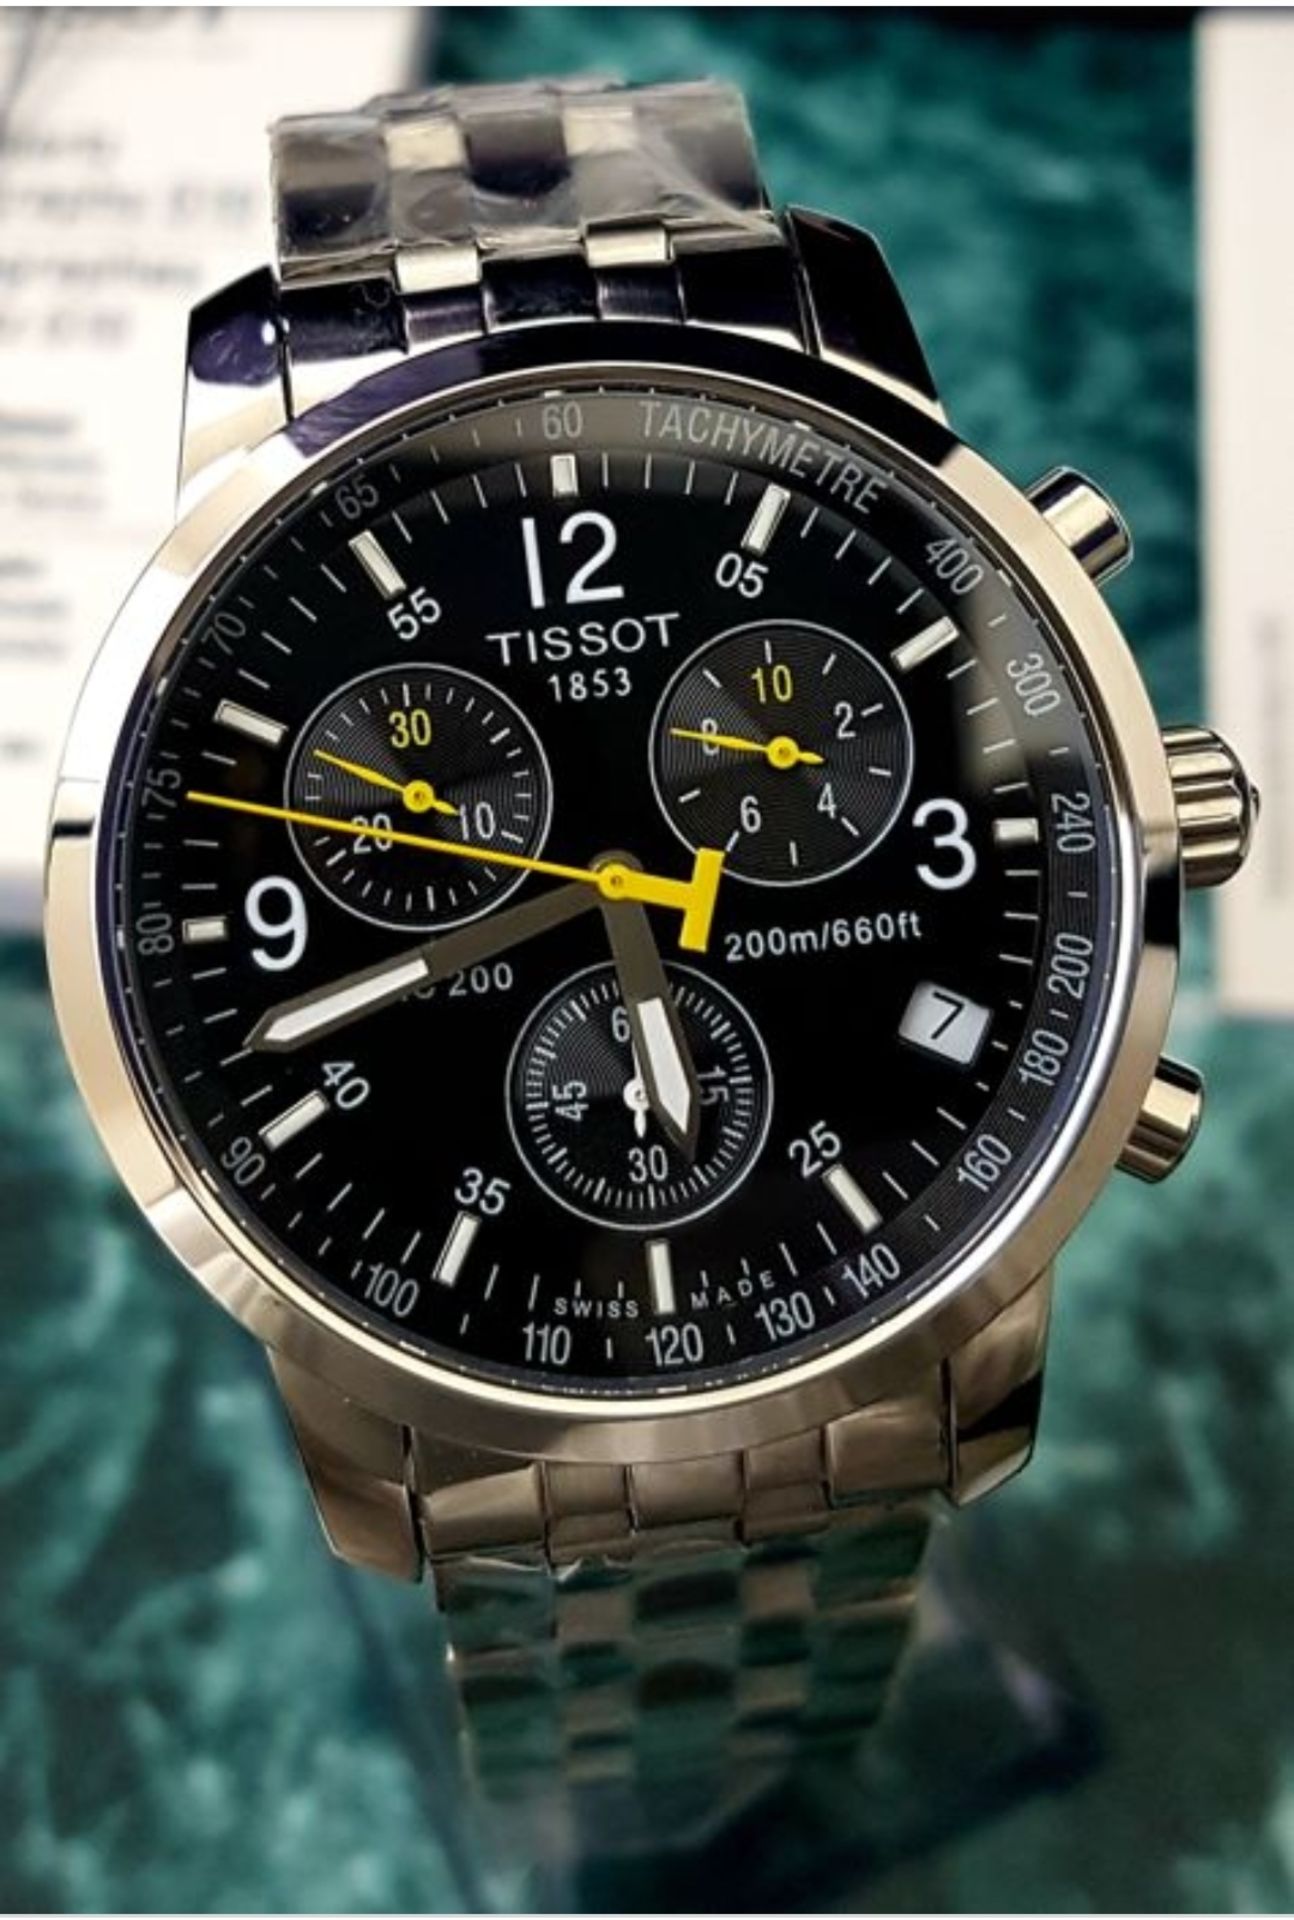 Tissot T17.1.586.52 PRC 200 Men's Chronograph Quartz Watch - Image 9 of 11